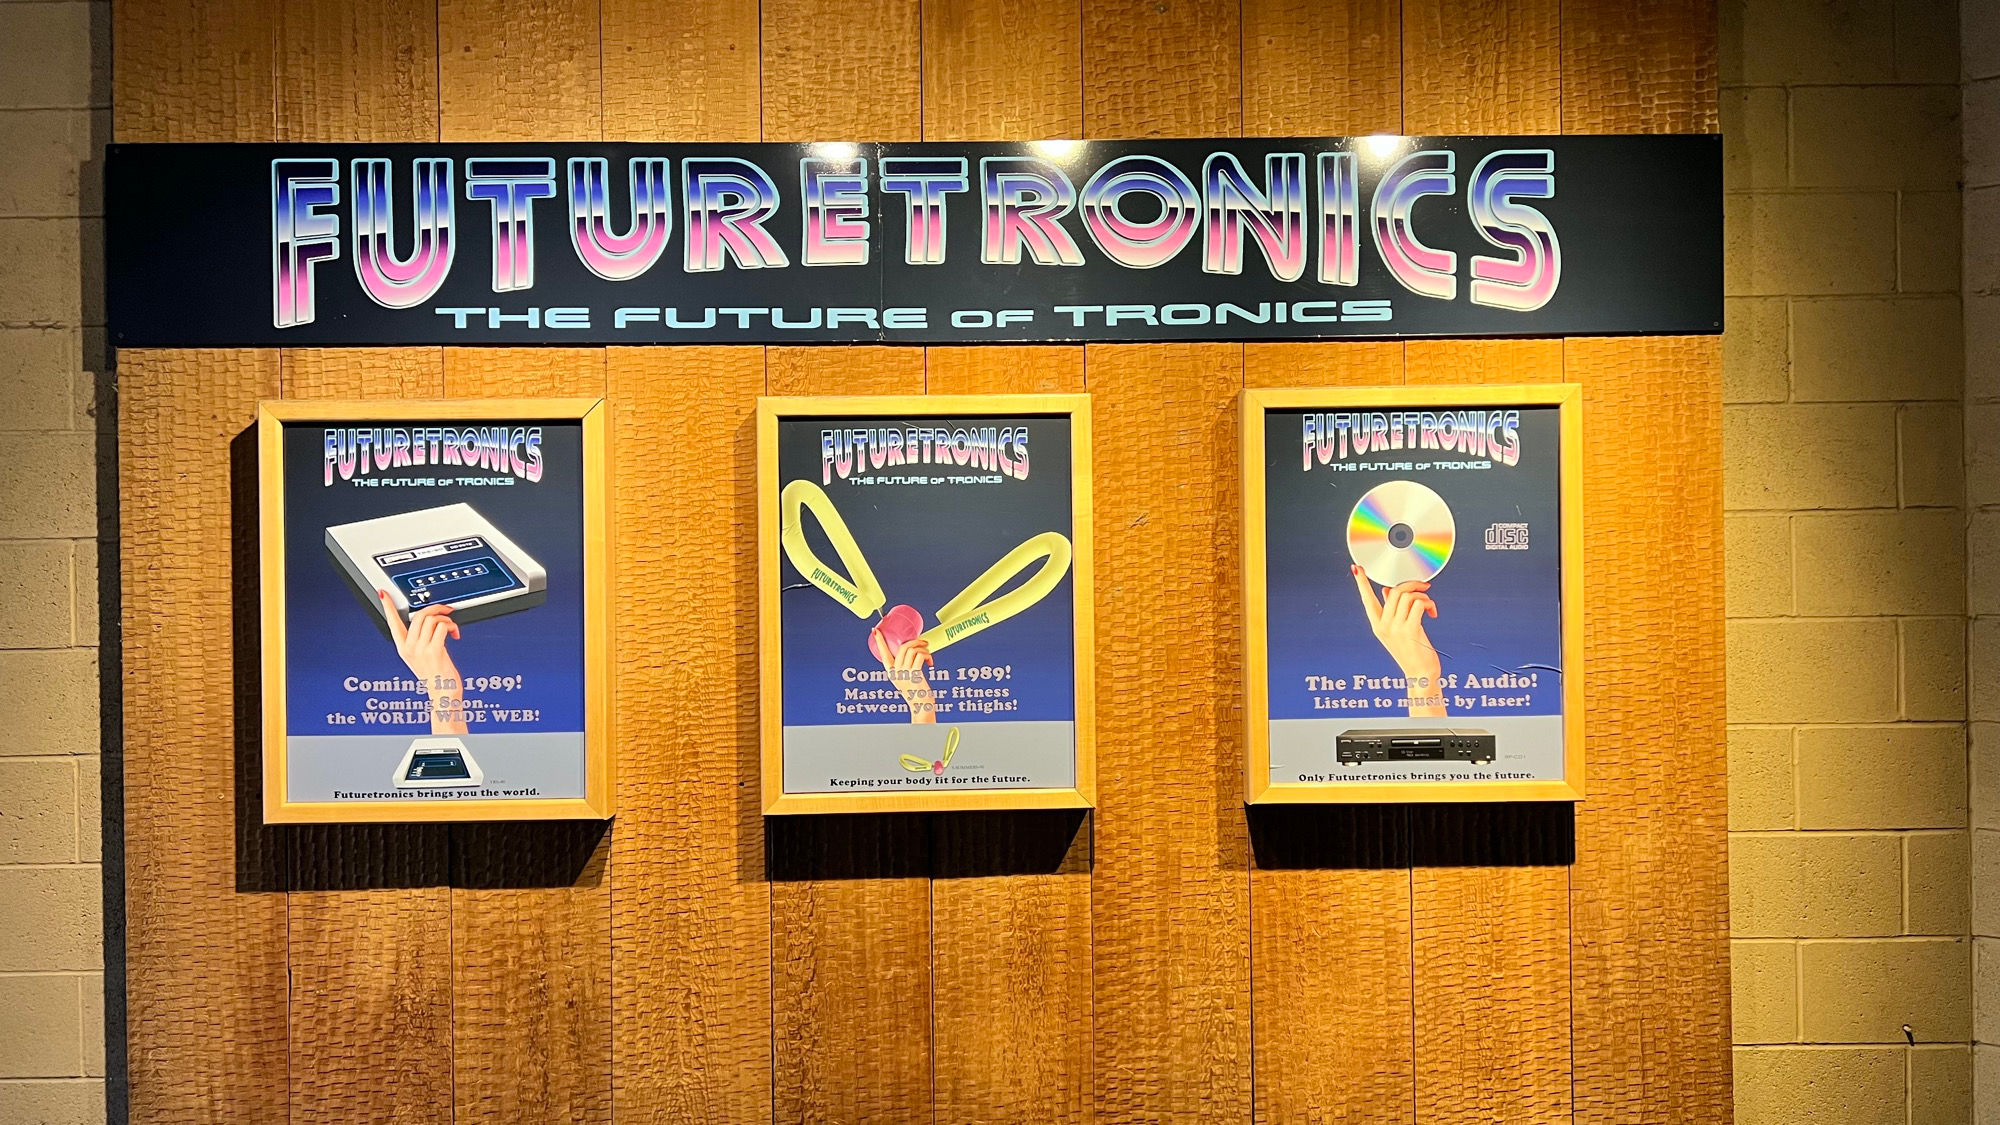 Futuretronics the future of tronics